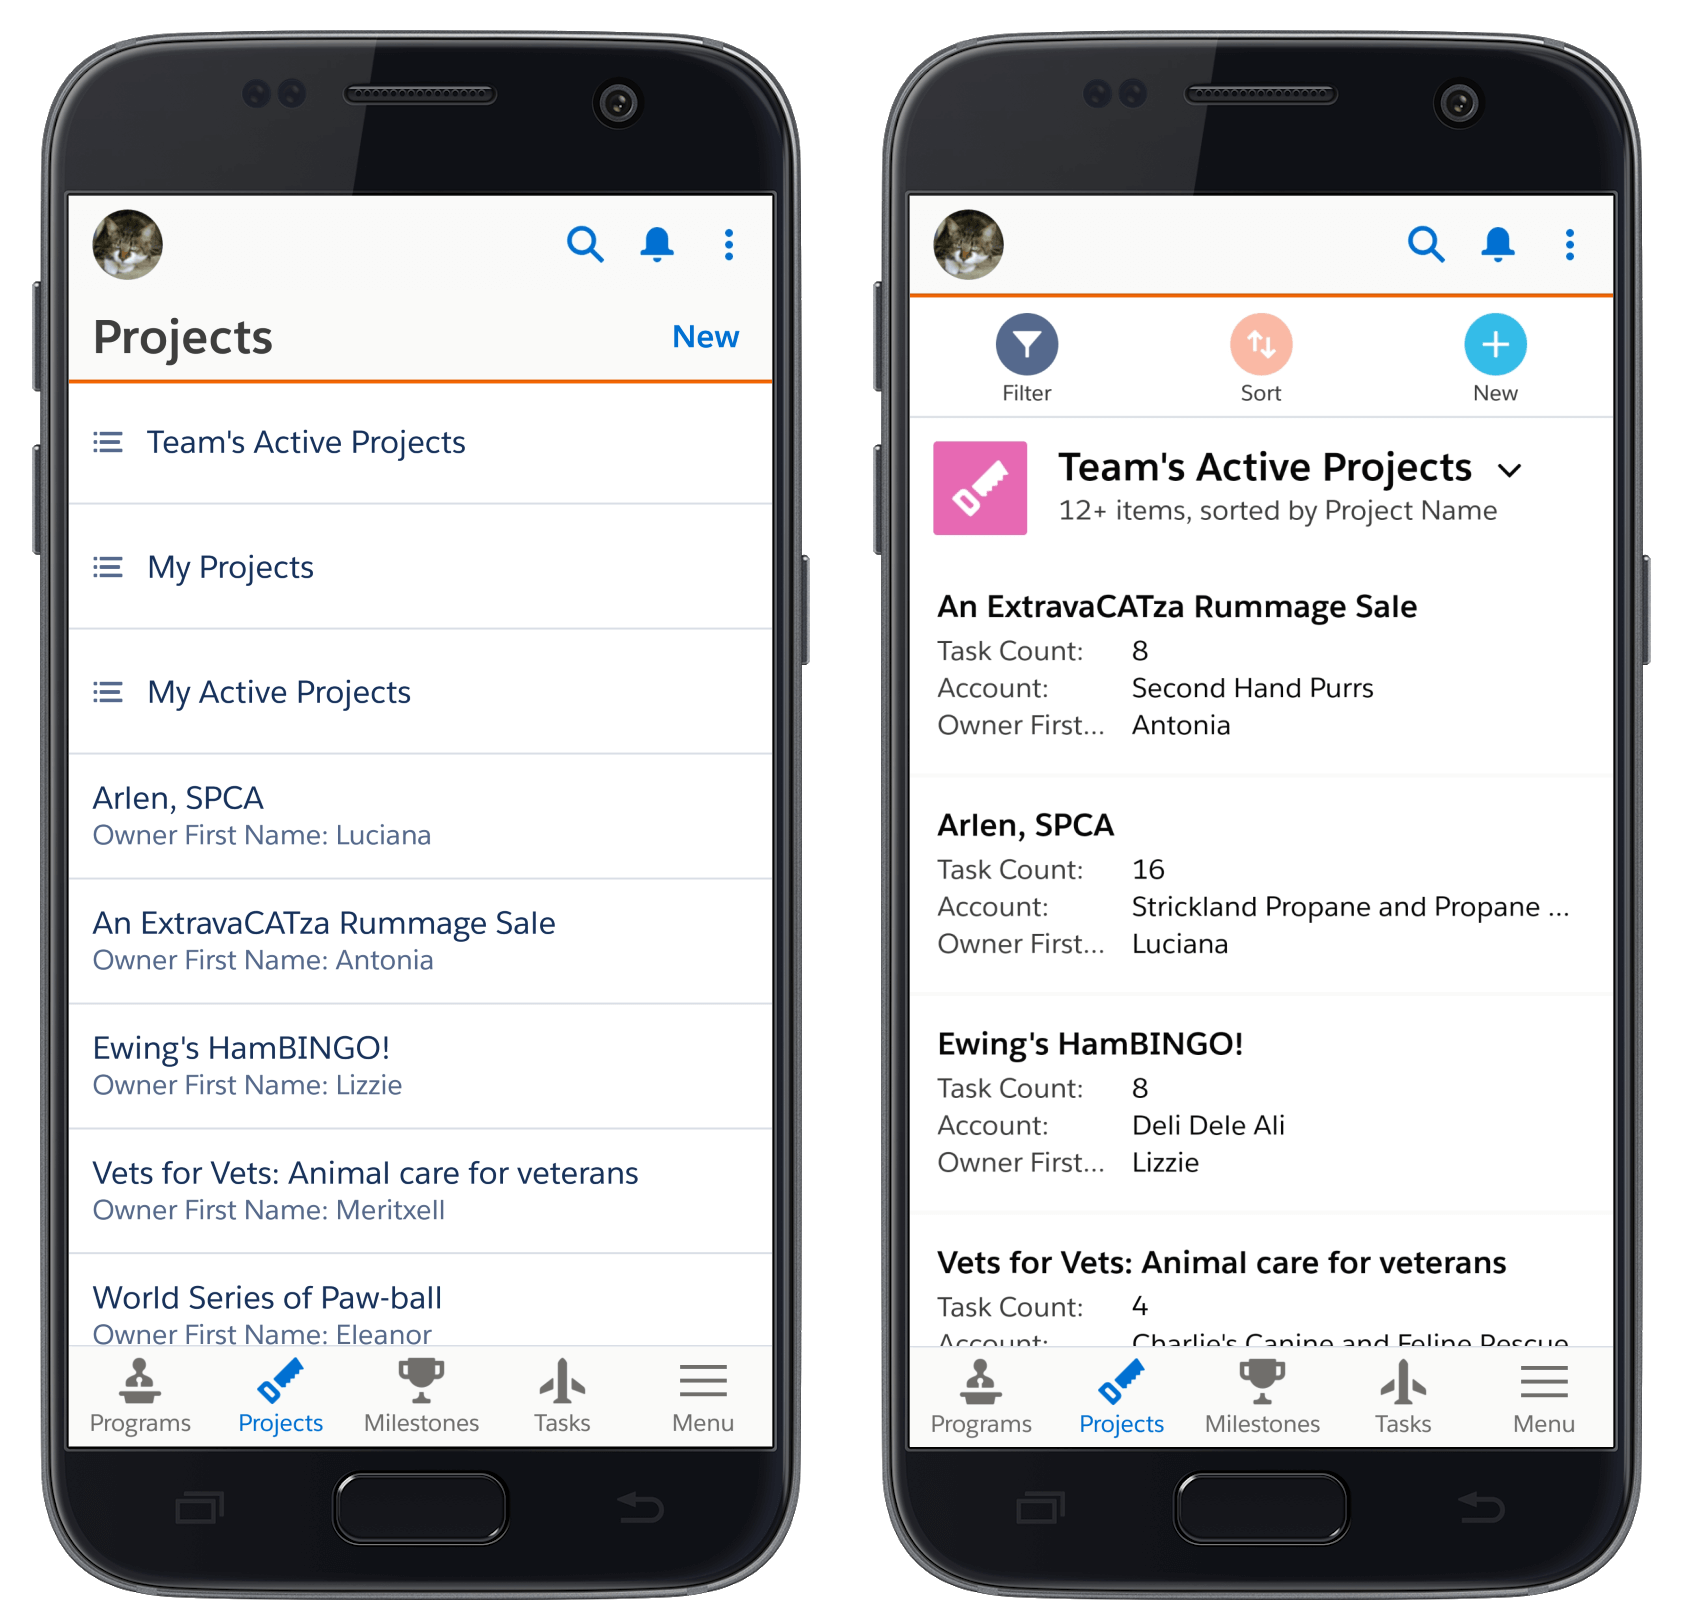 Mobile app menu